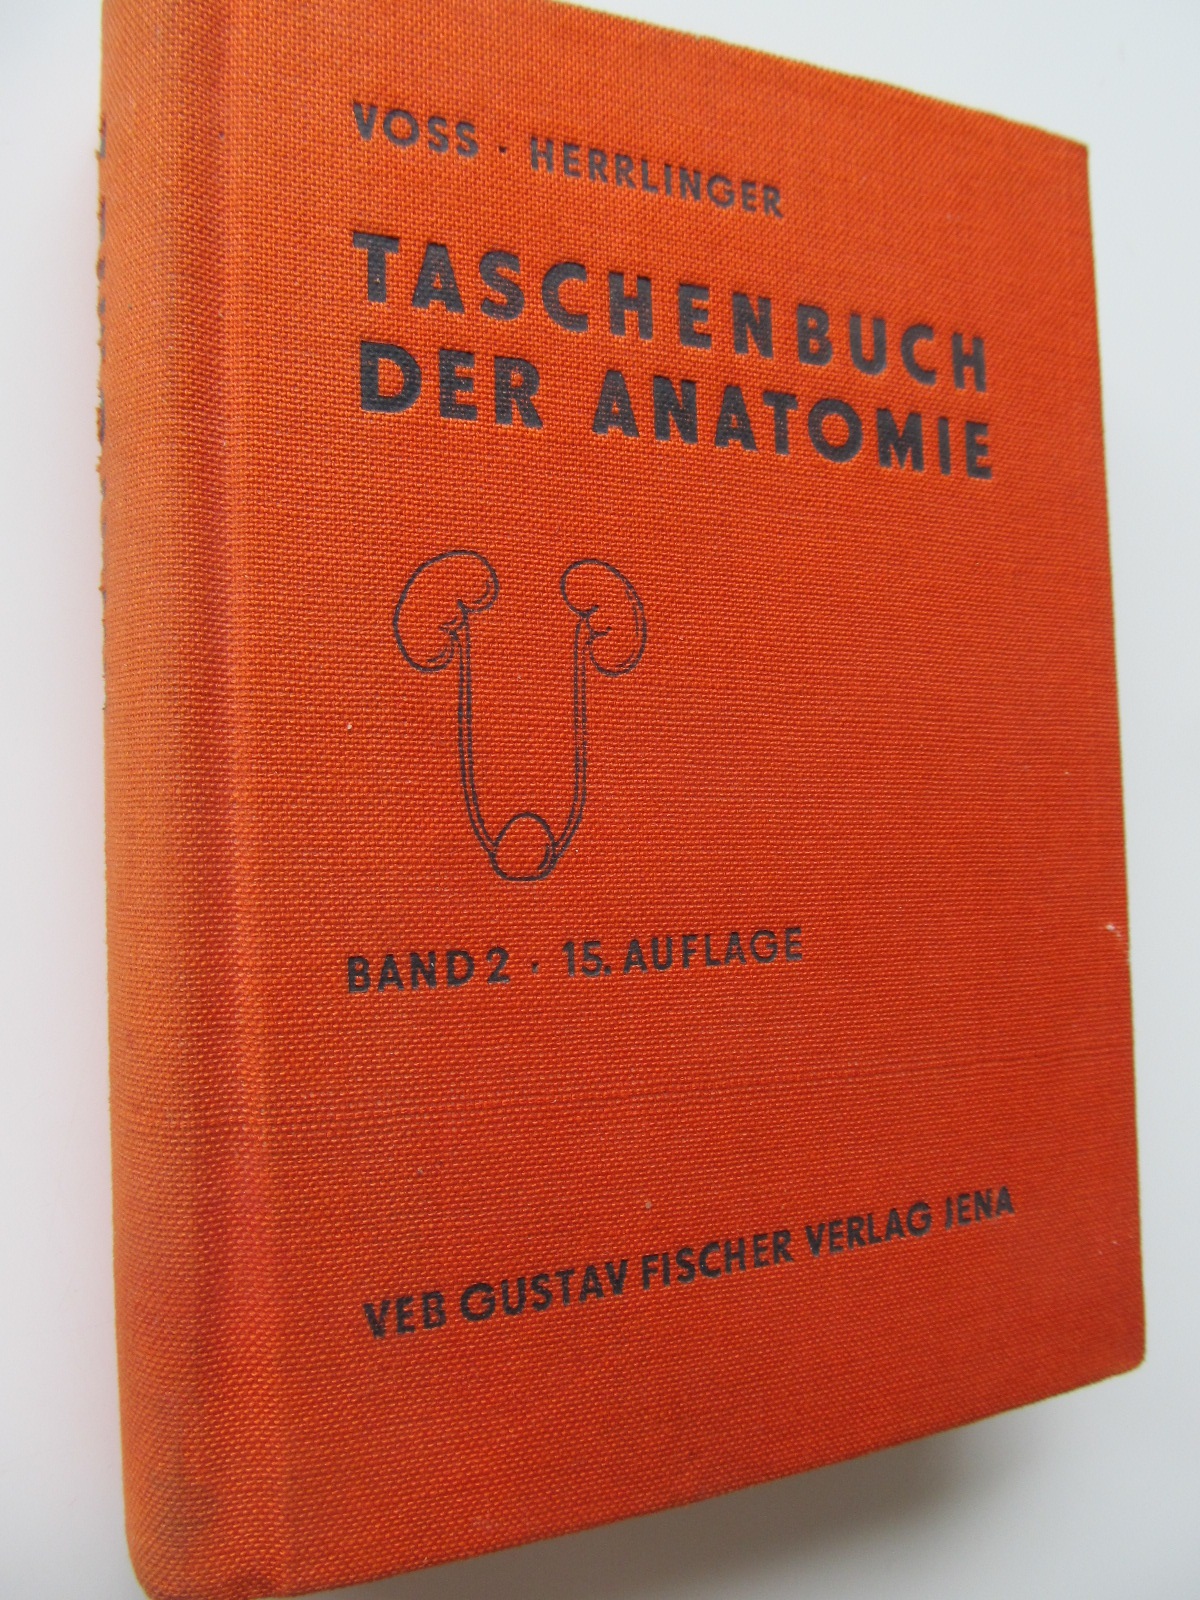 Taschenbuch der Anatomie (vol. 2) - Hermann Voss , Robert Herrlinger | Detalii carte